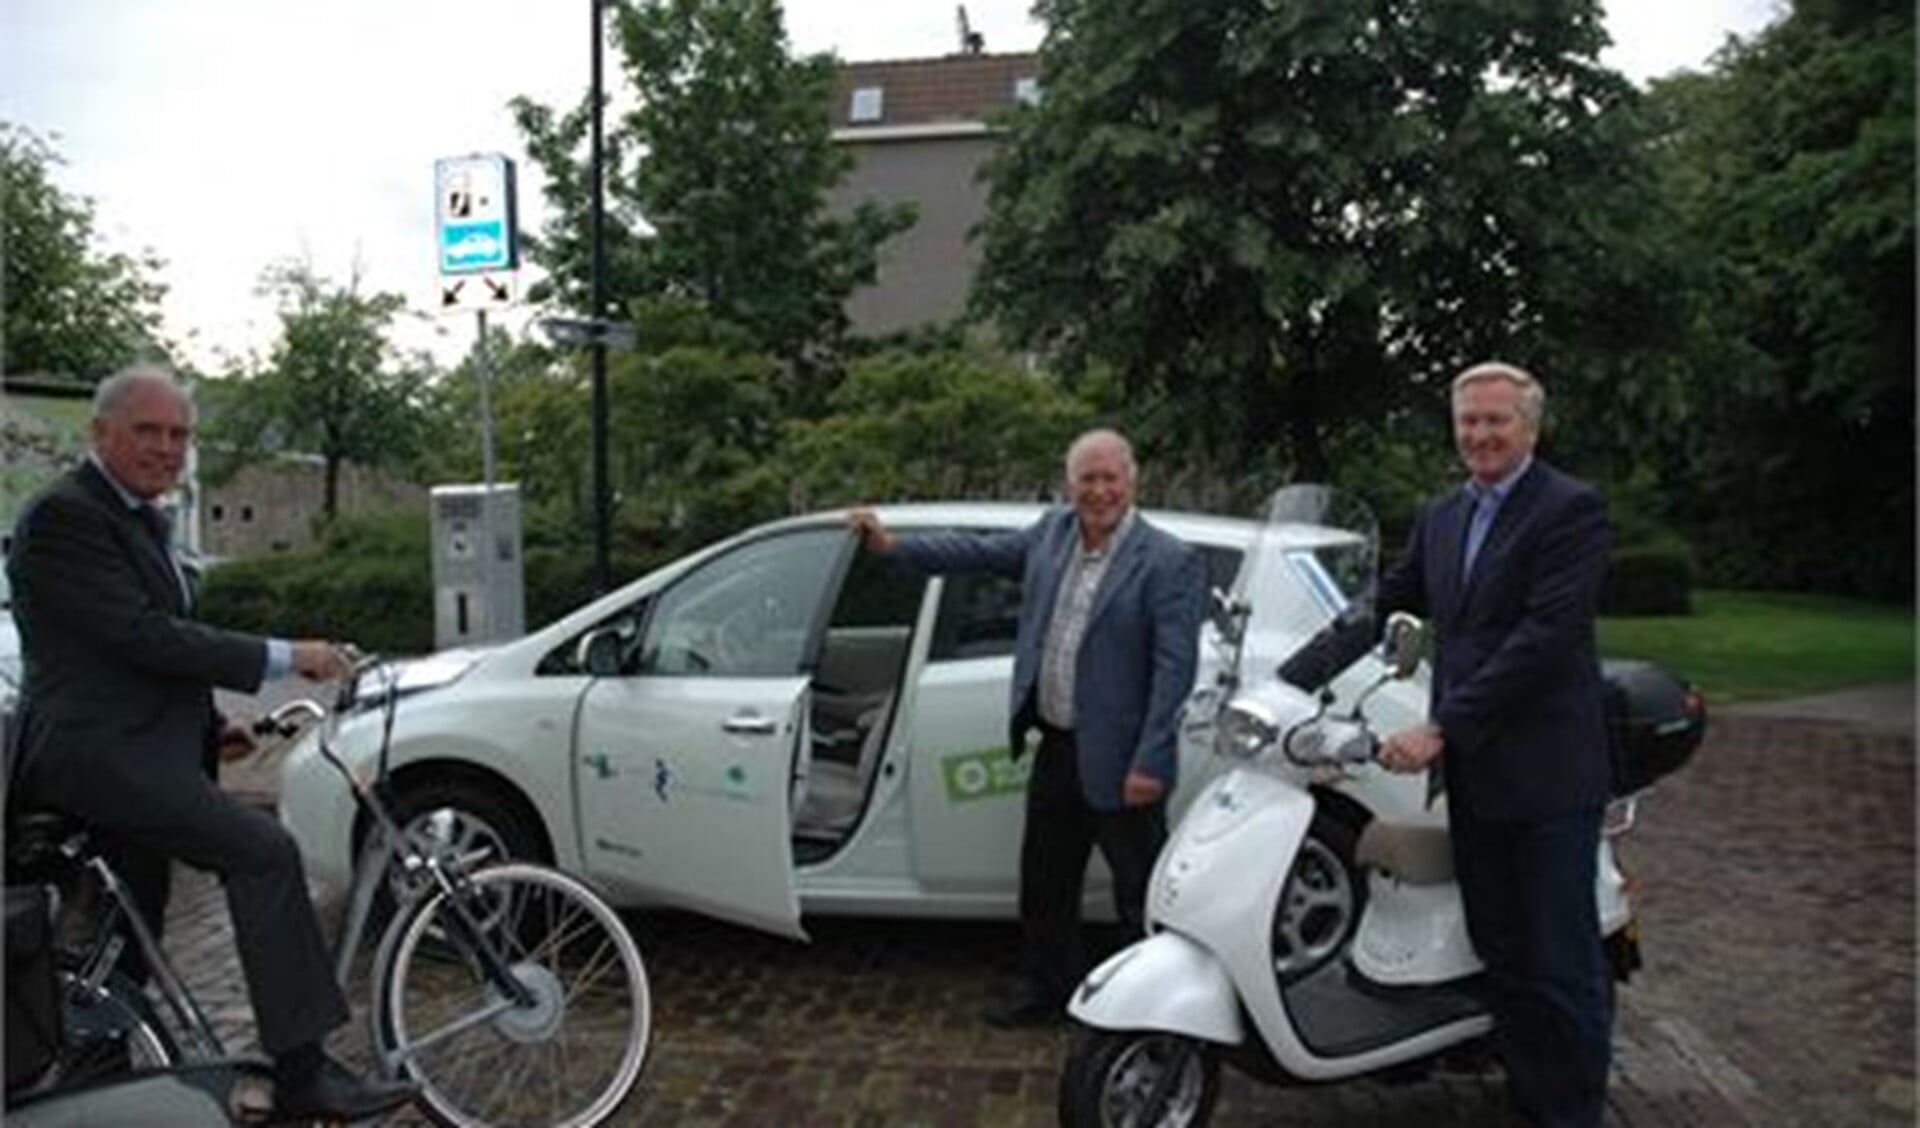 Wethouders  Peter Hofman, Hans van Lith en Hans van der Velde testen de drie elektrische varianten, fiets. auto en scooter.